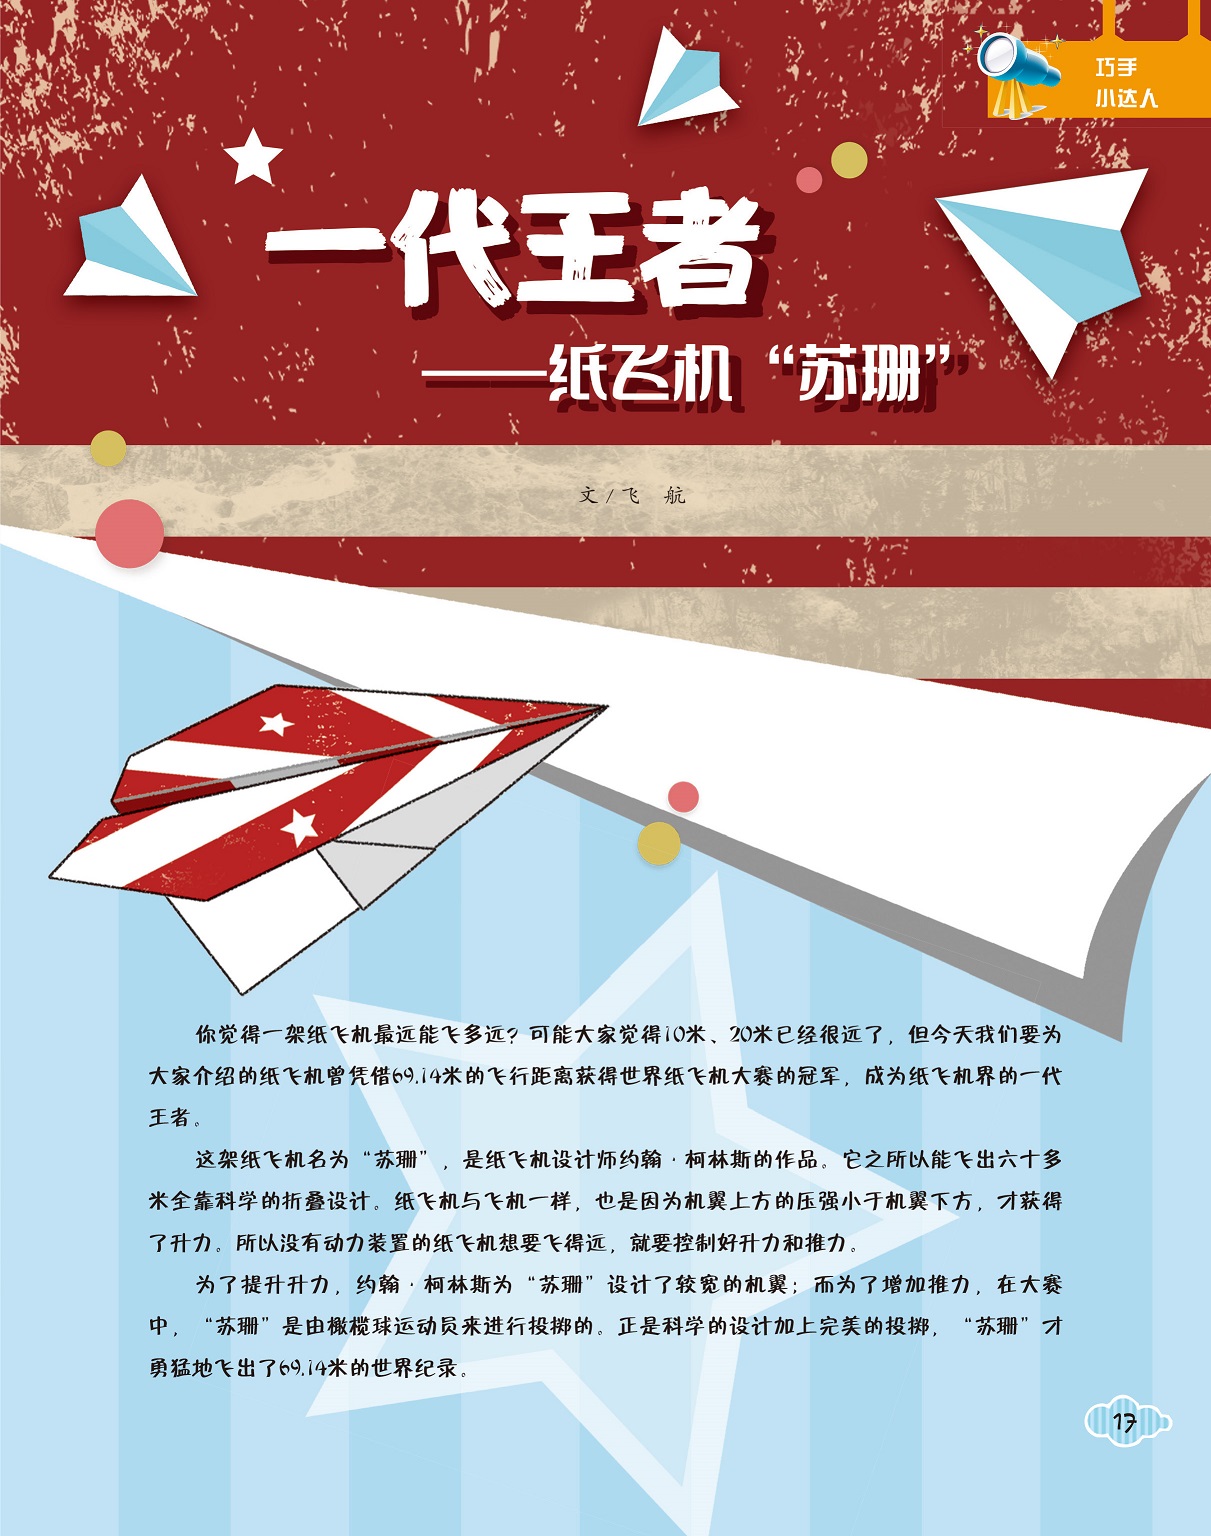 [纸飞机中国号码能注册吗]国内纸飞机注册使用方法教程2020